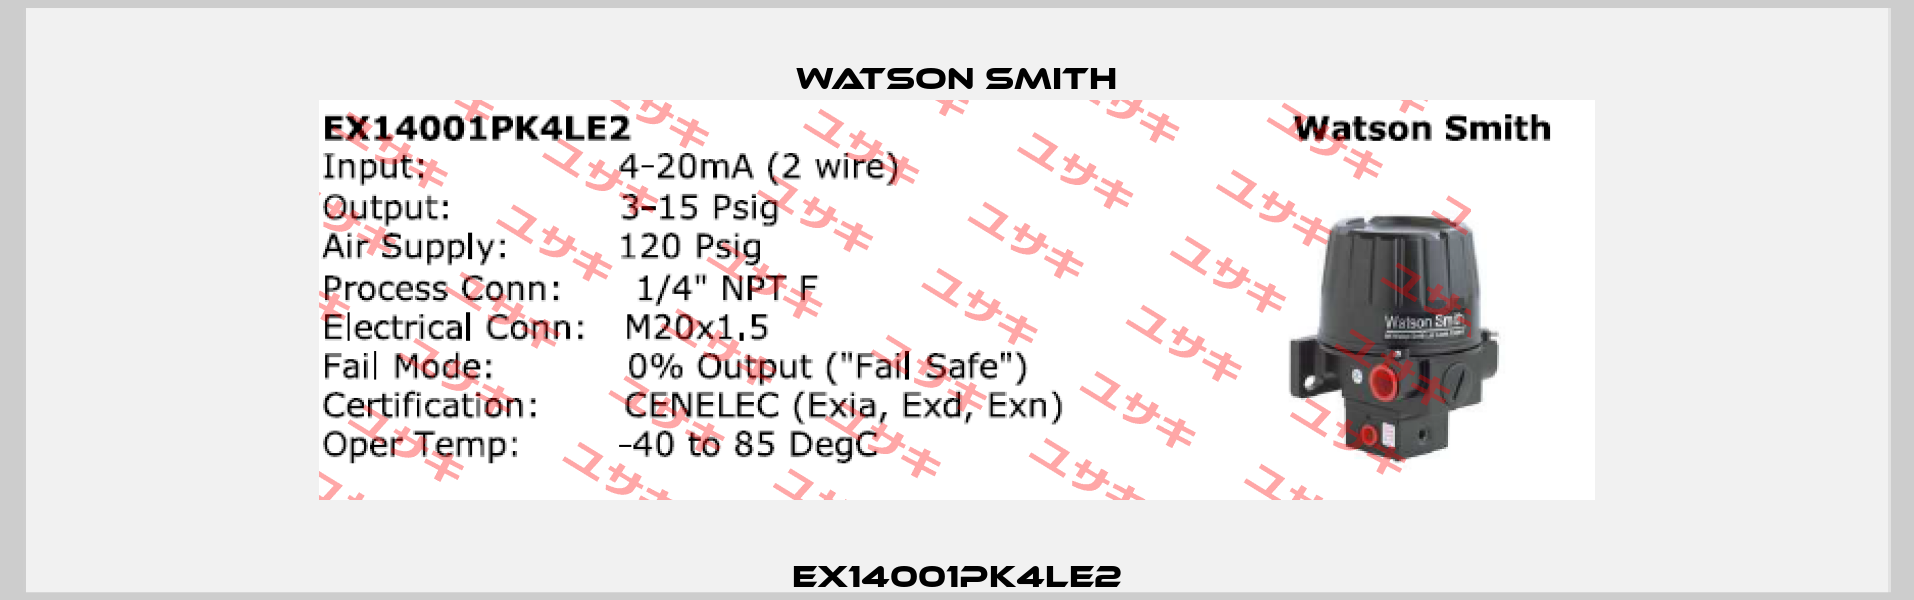 EX14001PK4LE2 Watson Smith